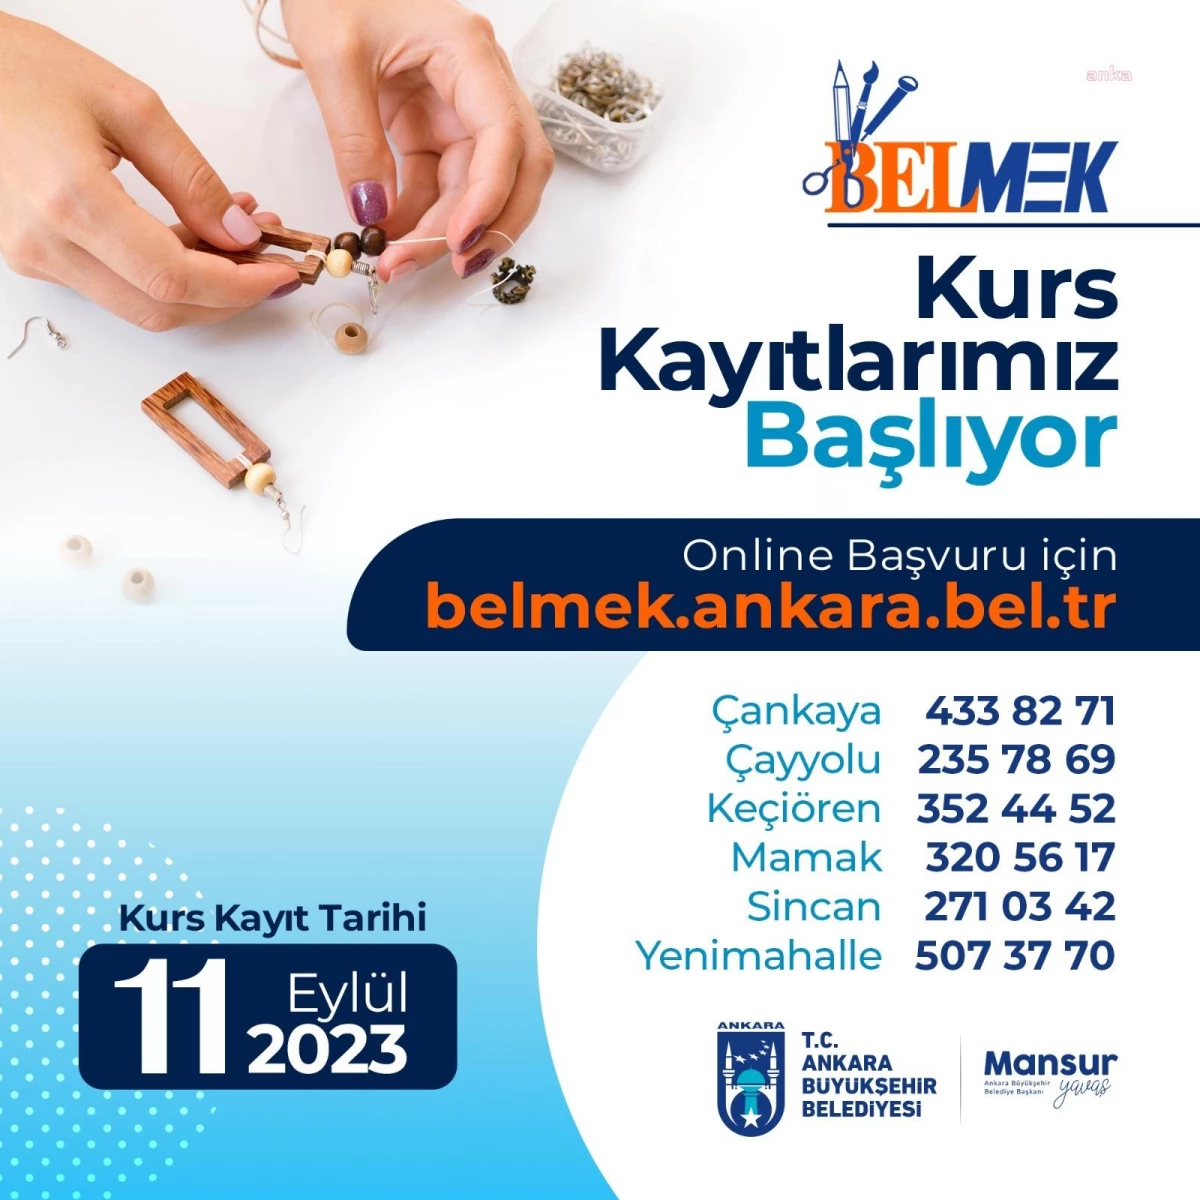 Ankara Büyükşehir Belediyesi BELMEK Kayıtları Başlıyor